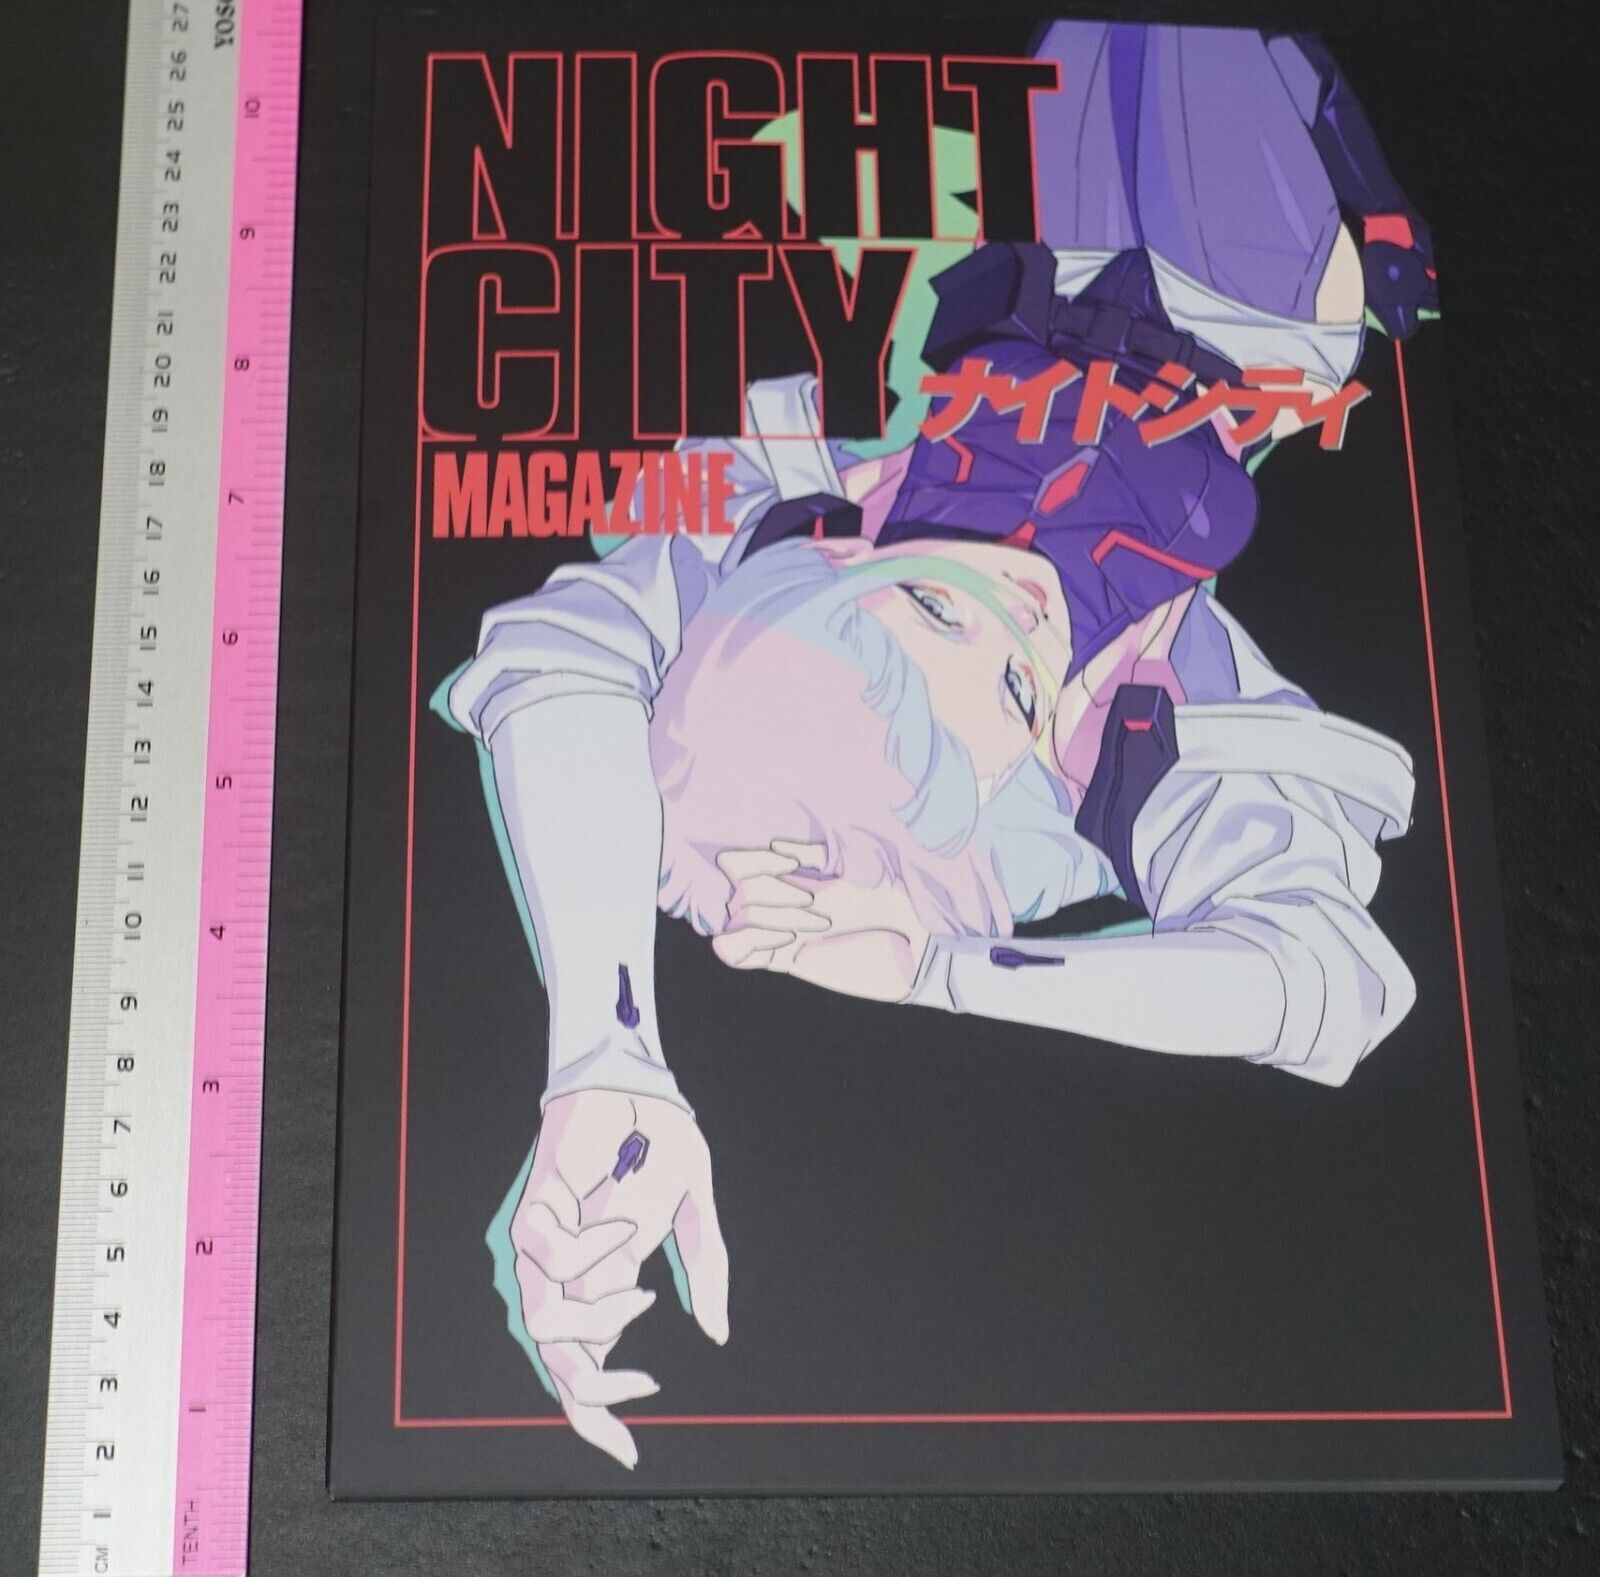 Studiio Trigger Cyberpunk Edgerunners Staff Art Book NIGHT CITY 